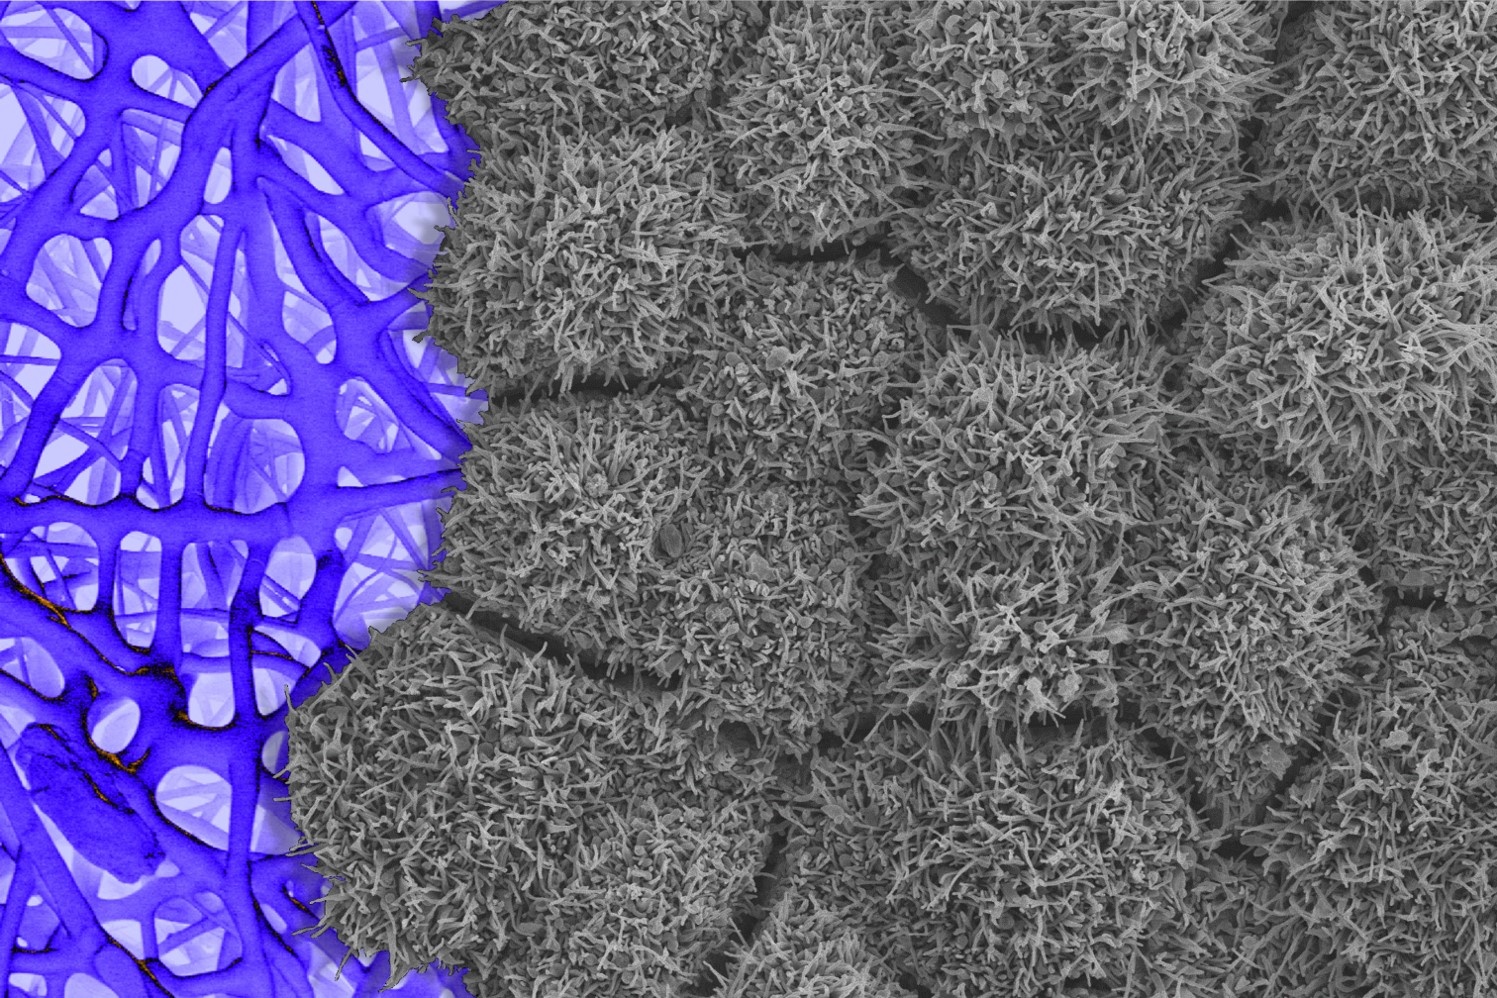 Nanovláknová struktura (ilustrační snímek)